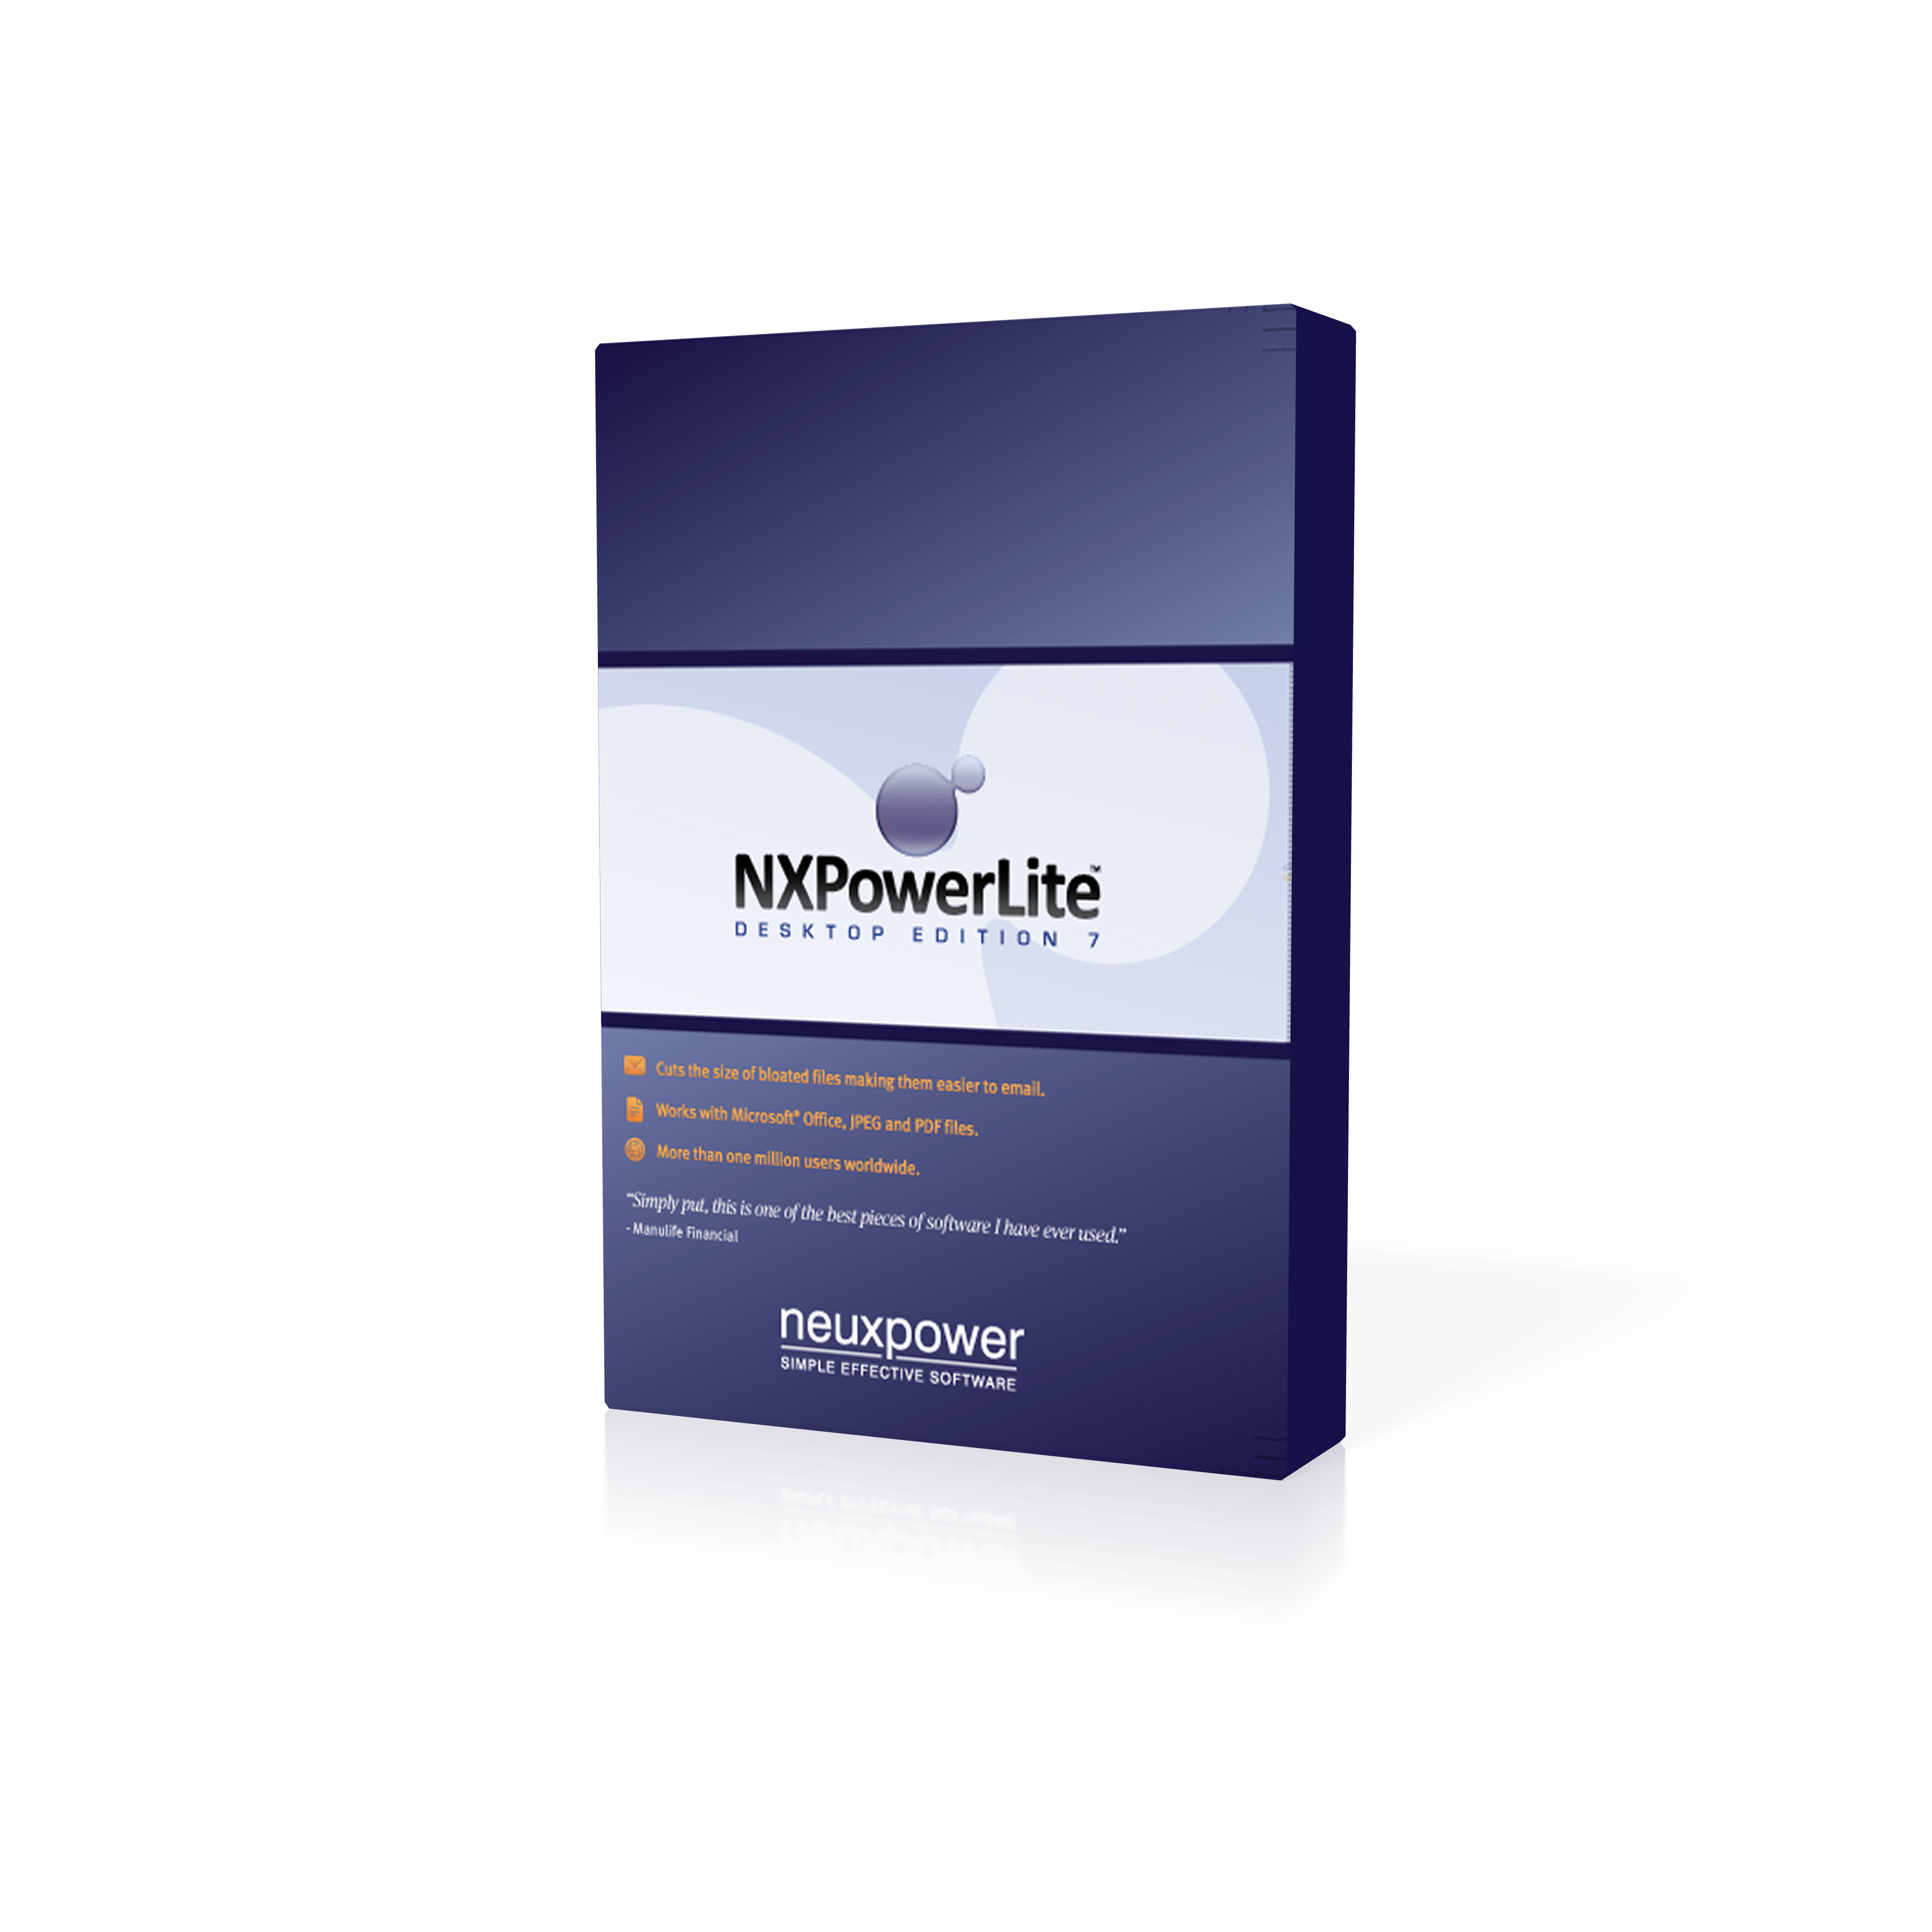 NXPowerLite Desktop 10.0.1 for windows download free